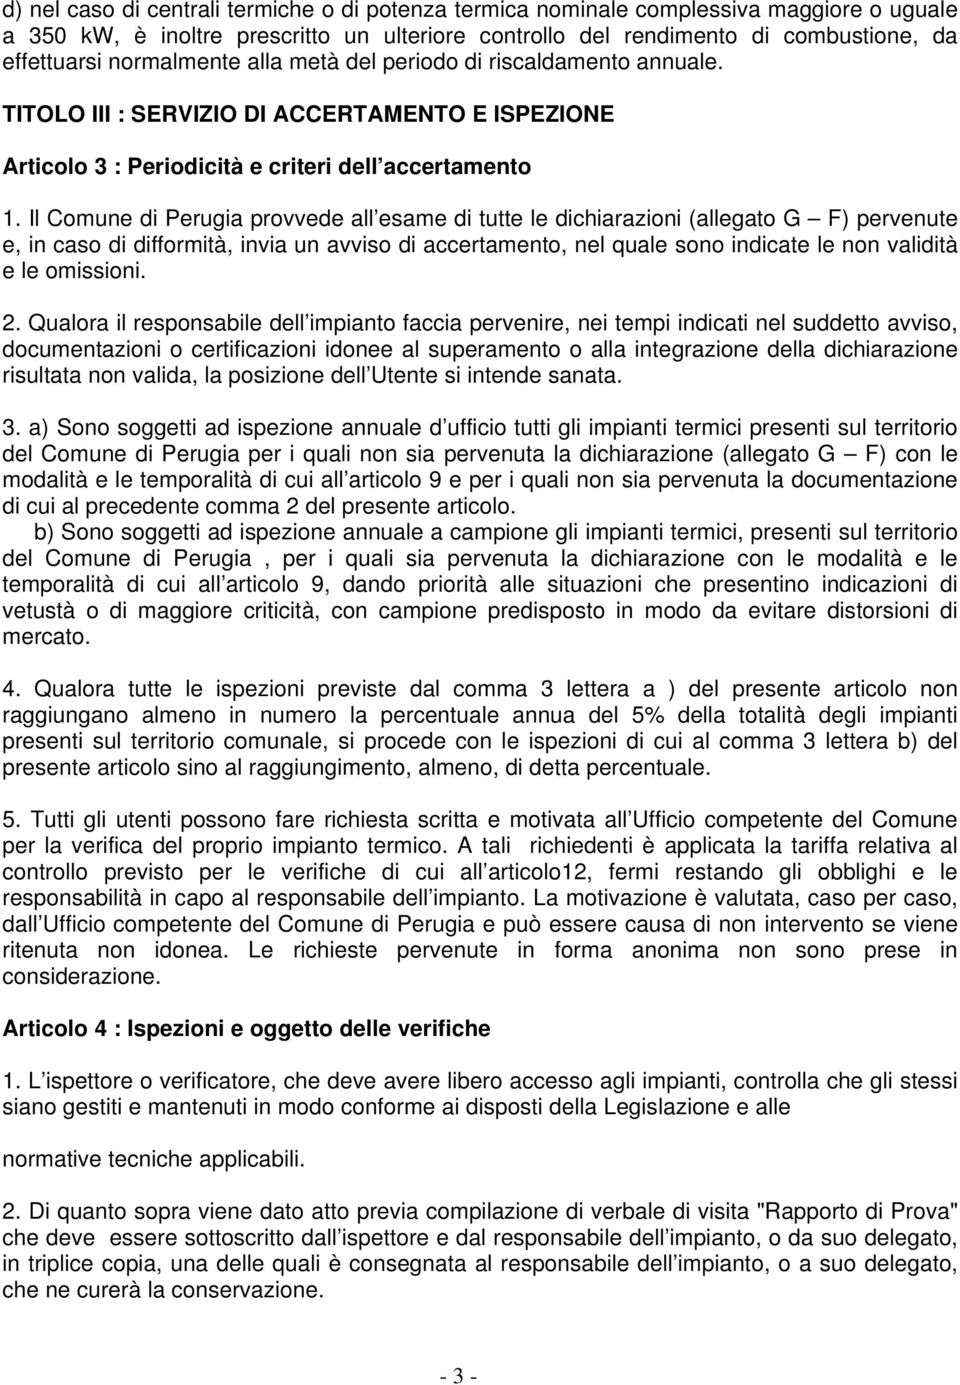 Il Comune di Perugia provvede all esame di tutte le dichiarazioni (allegato G F) pervenute e, in caso di difformità, invia un avviso di accertamento, nel quale sono indicate le non validità e le